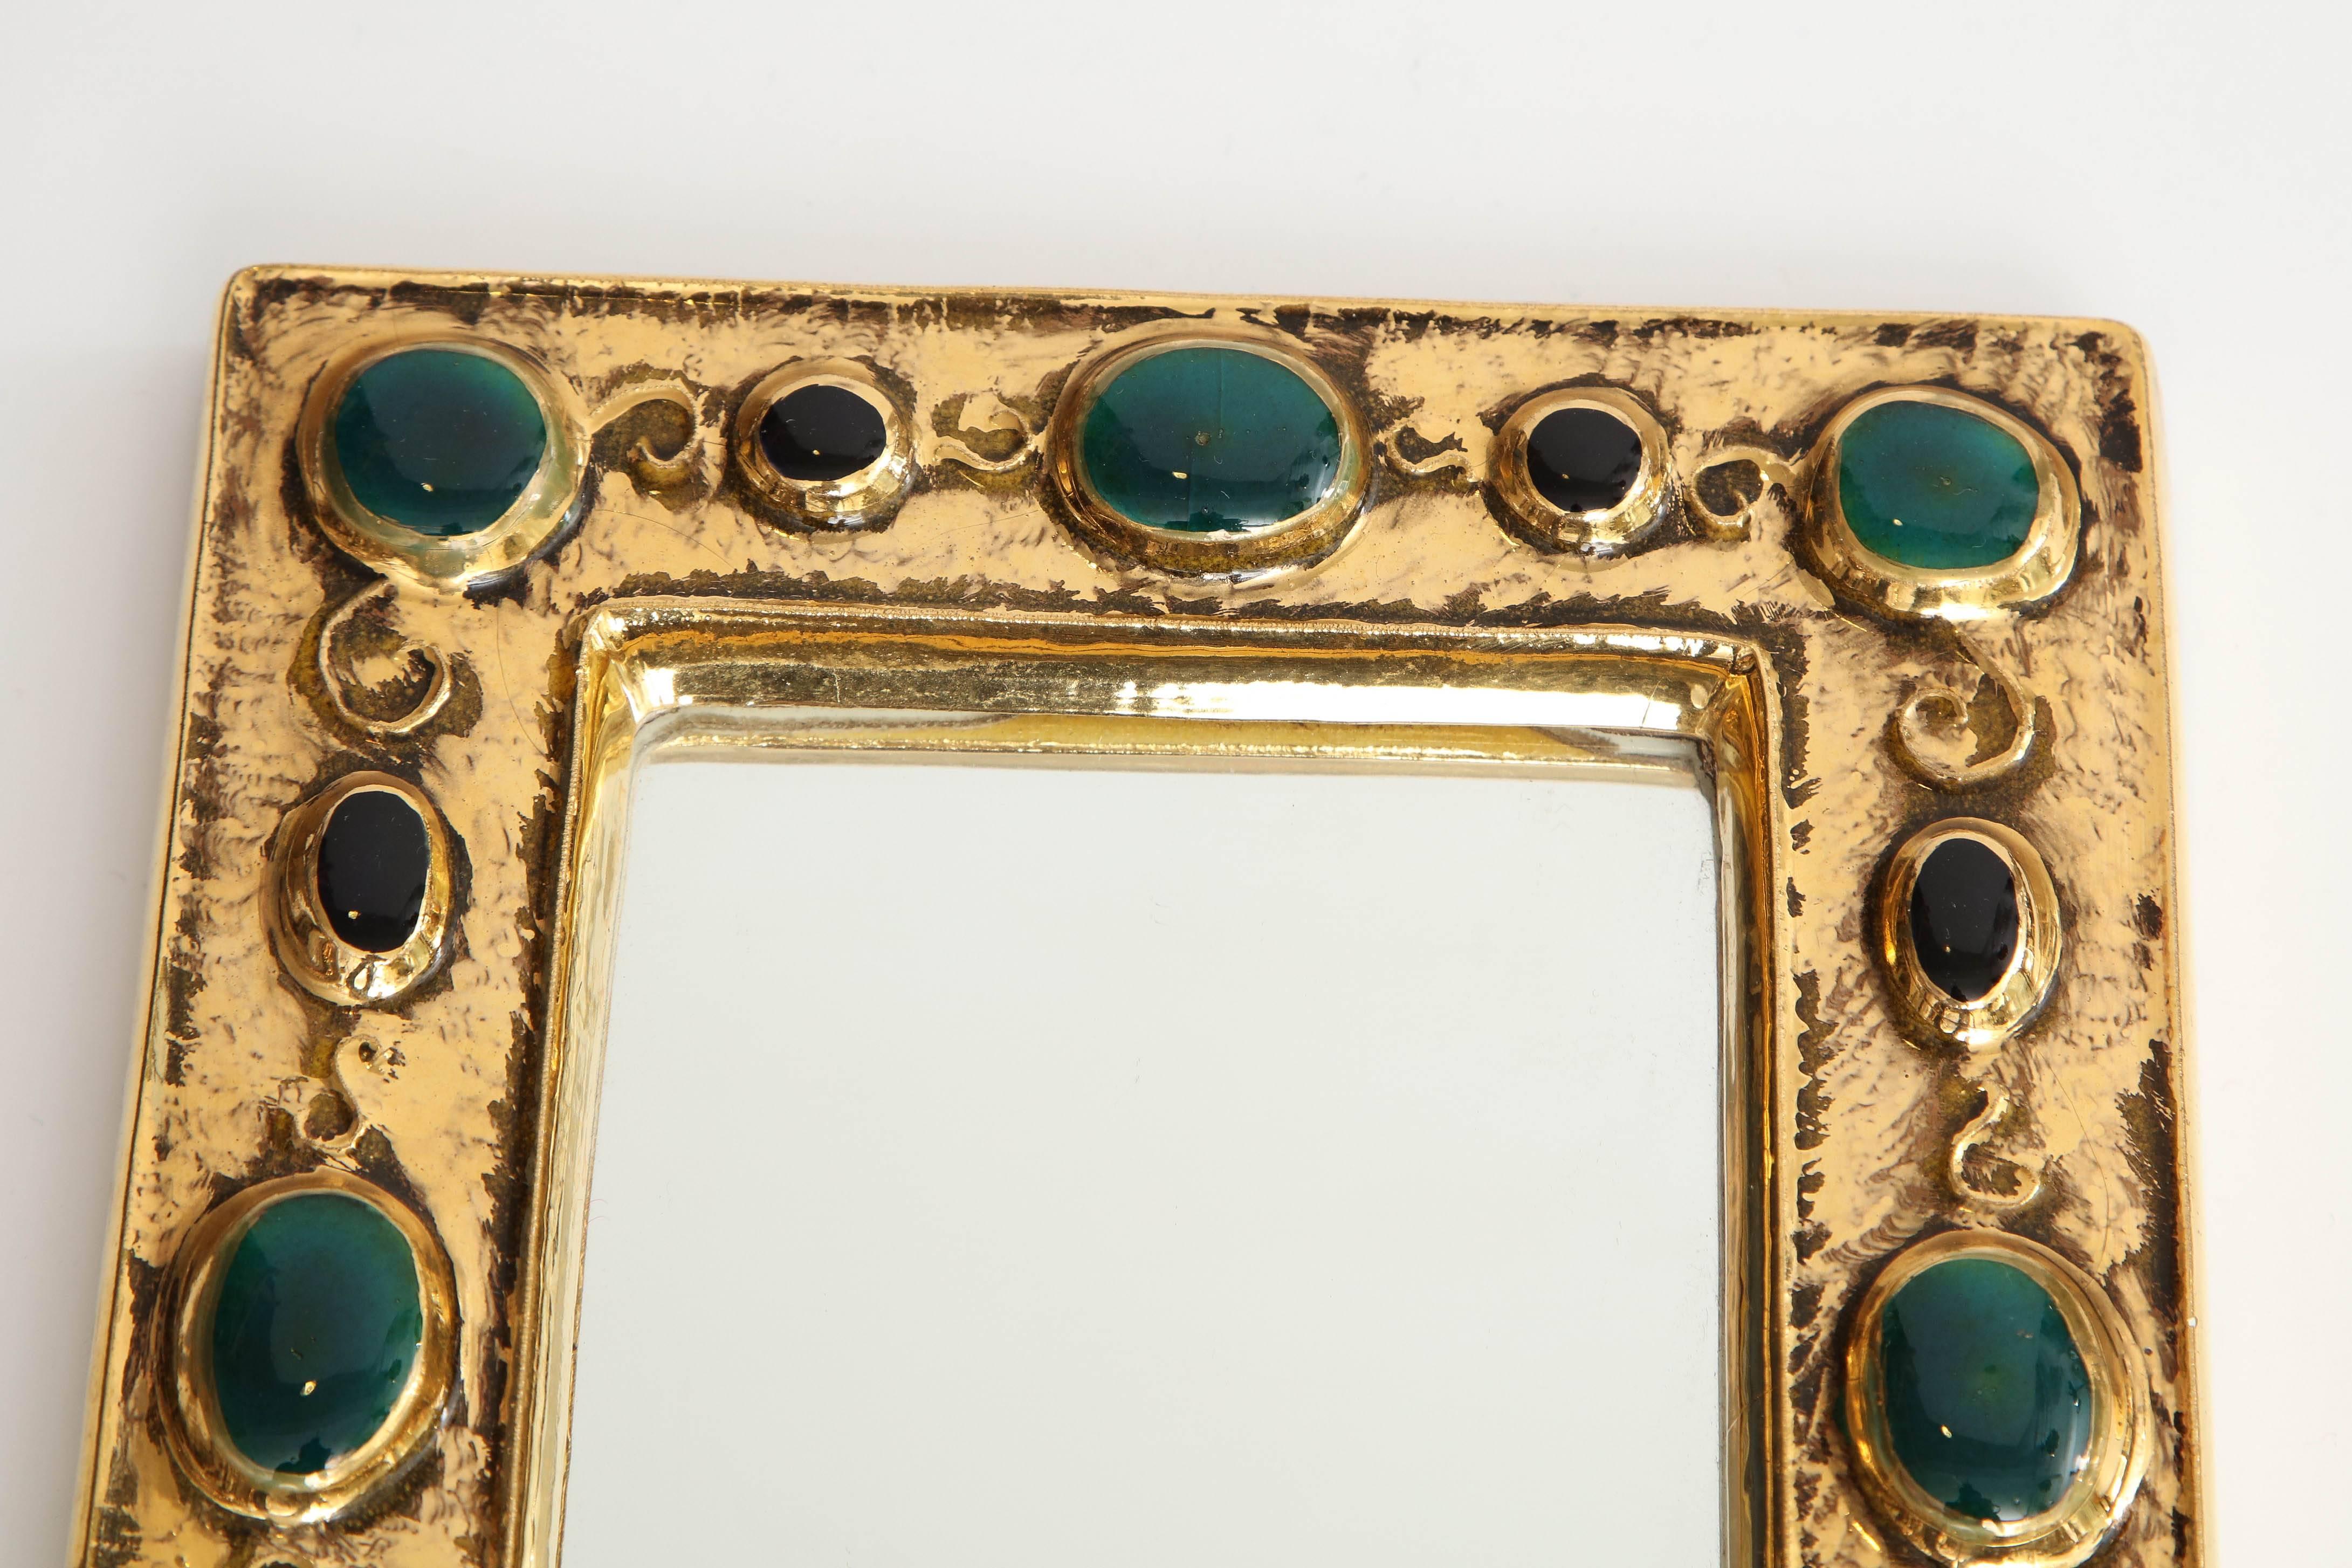 Ein schöner und charmanter Spiegel, entworfen von dem französischen Künstler Francois Lembo. Der Spiegel besteht aus einem Rahmen aus Craquelé-Goldglasur und weist ein Design aus 